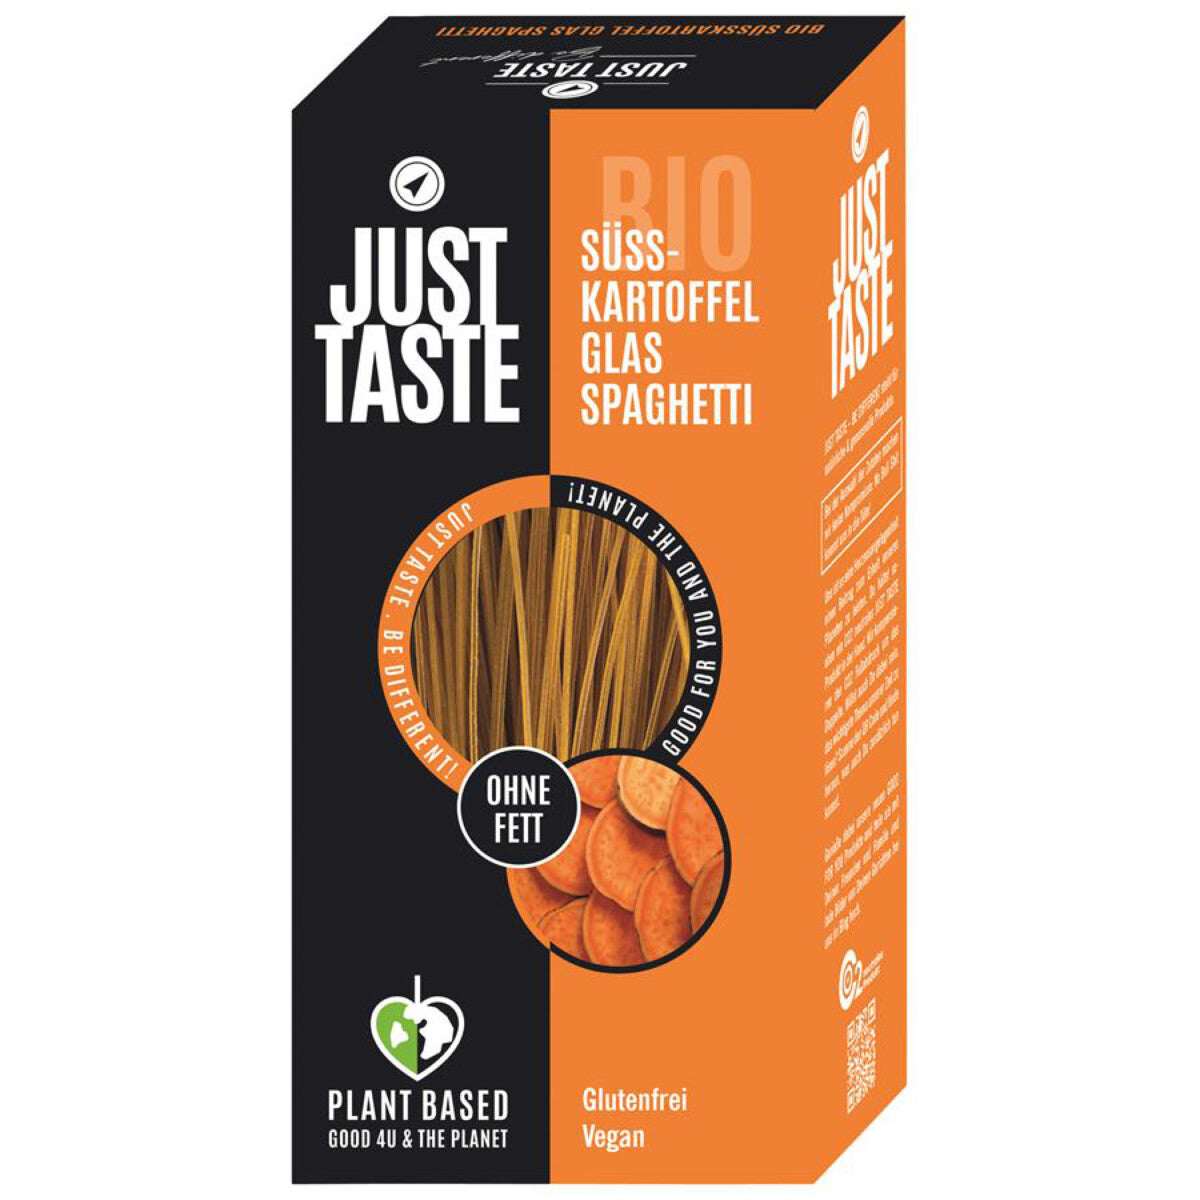 JUST TASTE Süßkartoffel Glas Spaghetti - 250 g